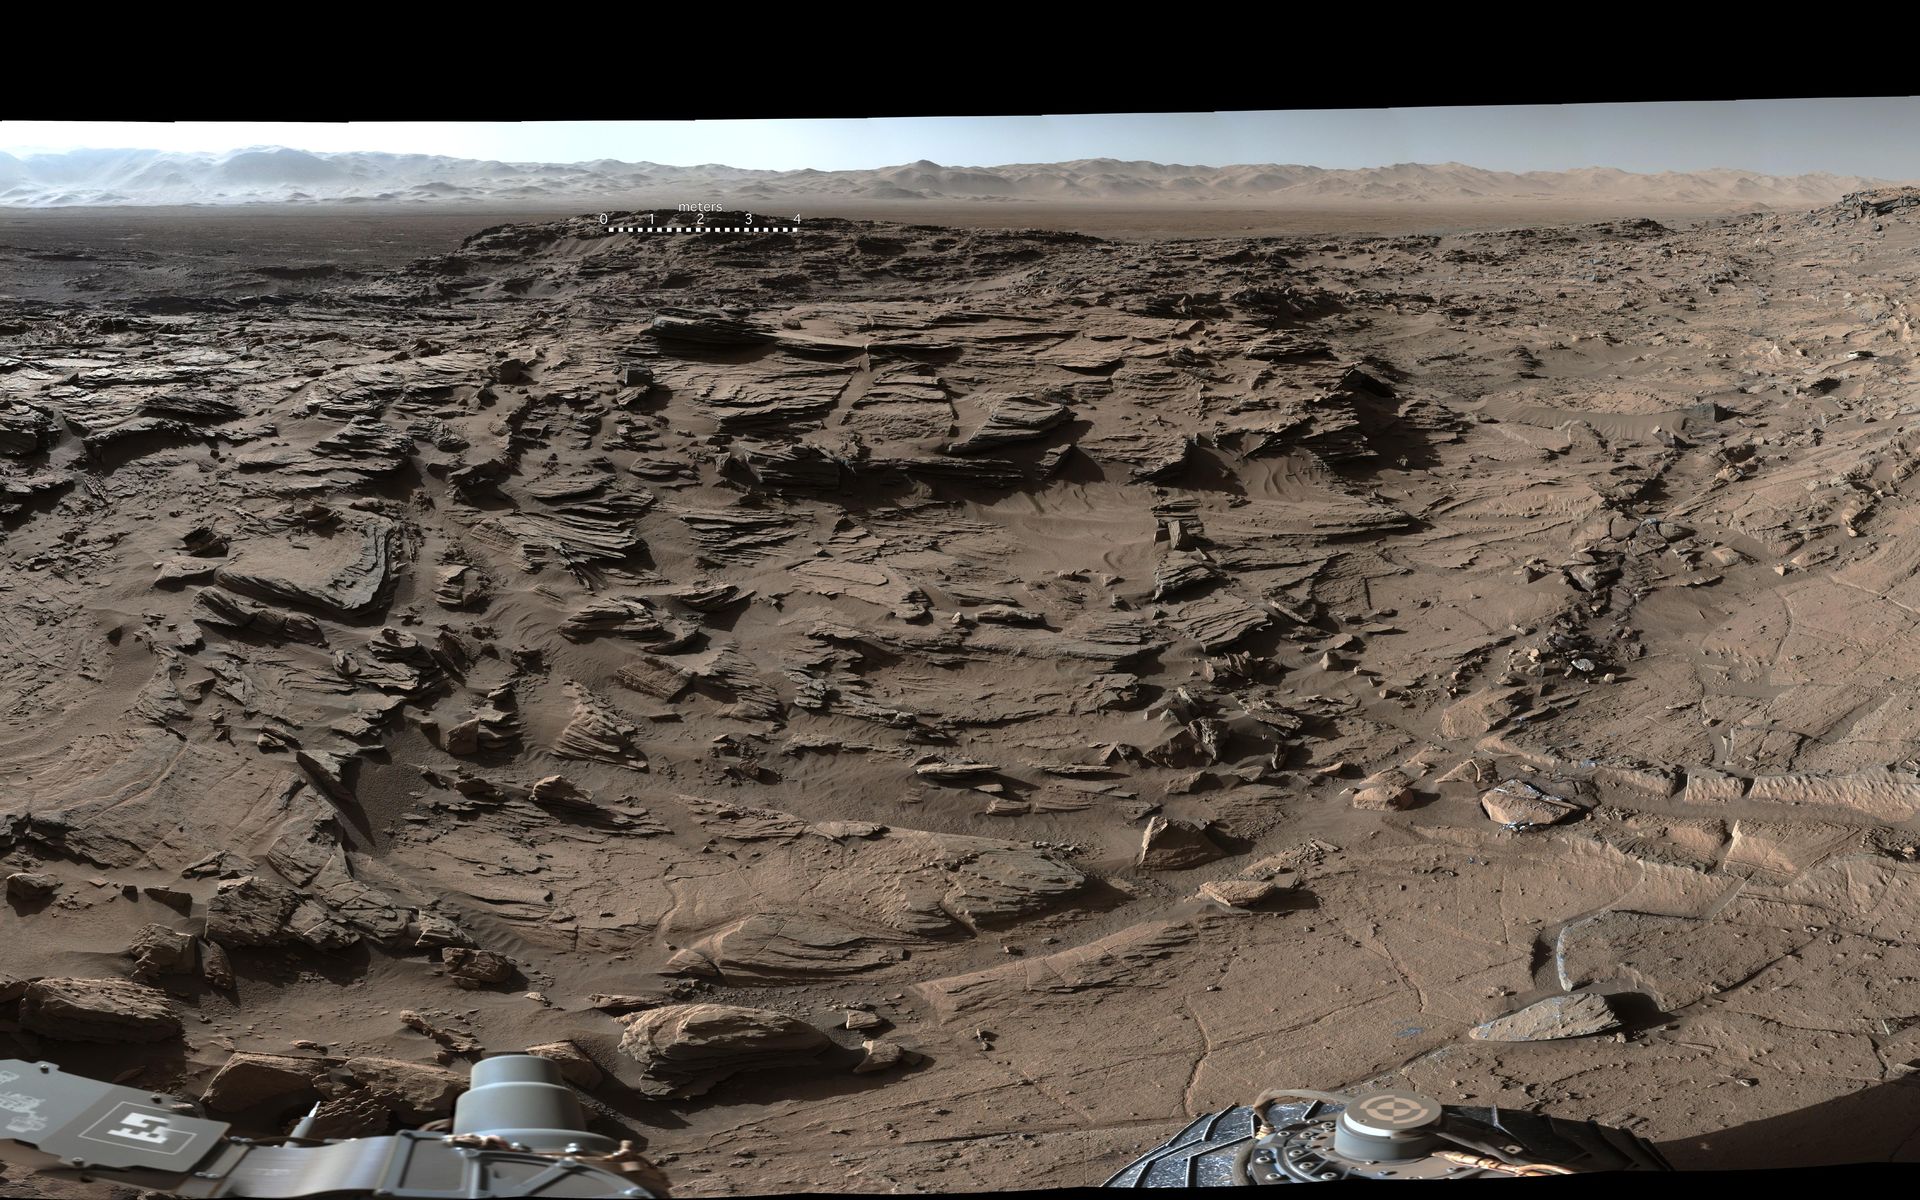 Extrait du panorama à 360° réunissant des dizaines de photos prises avec la MastCam de Curiosity par un bel après-midi martien, le 4 avril 2016 (sol 1.302). Au premier plan, le plateau Naukluft que traversait alors le rover. À l’arrière-plan, à droite, le mont Sharp. À l’arrière-plan, au centre et à gauche, les remparts du cratère Gale. Pour une vue complète en très haute résolution, cliquez ici pour télécharger le fichier de 110 Mo. © Nasa, JPL, MSSS